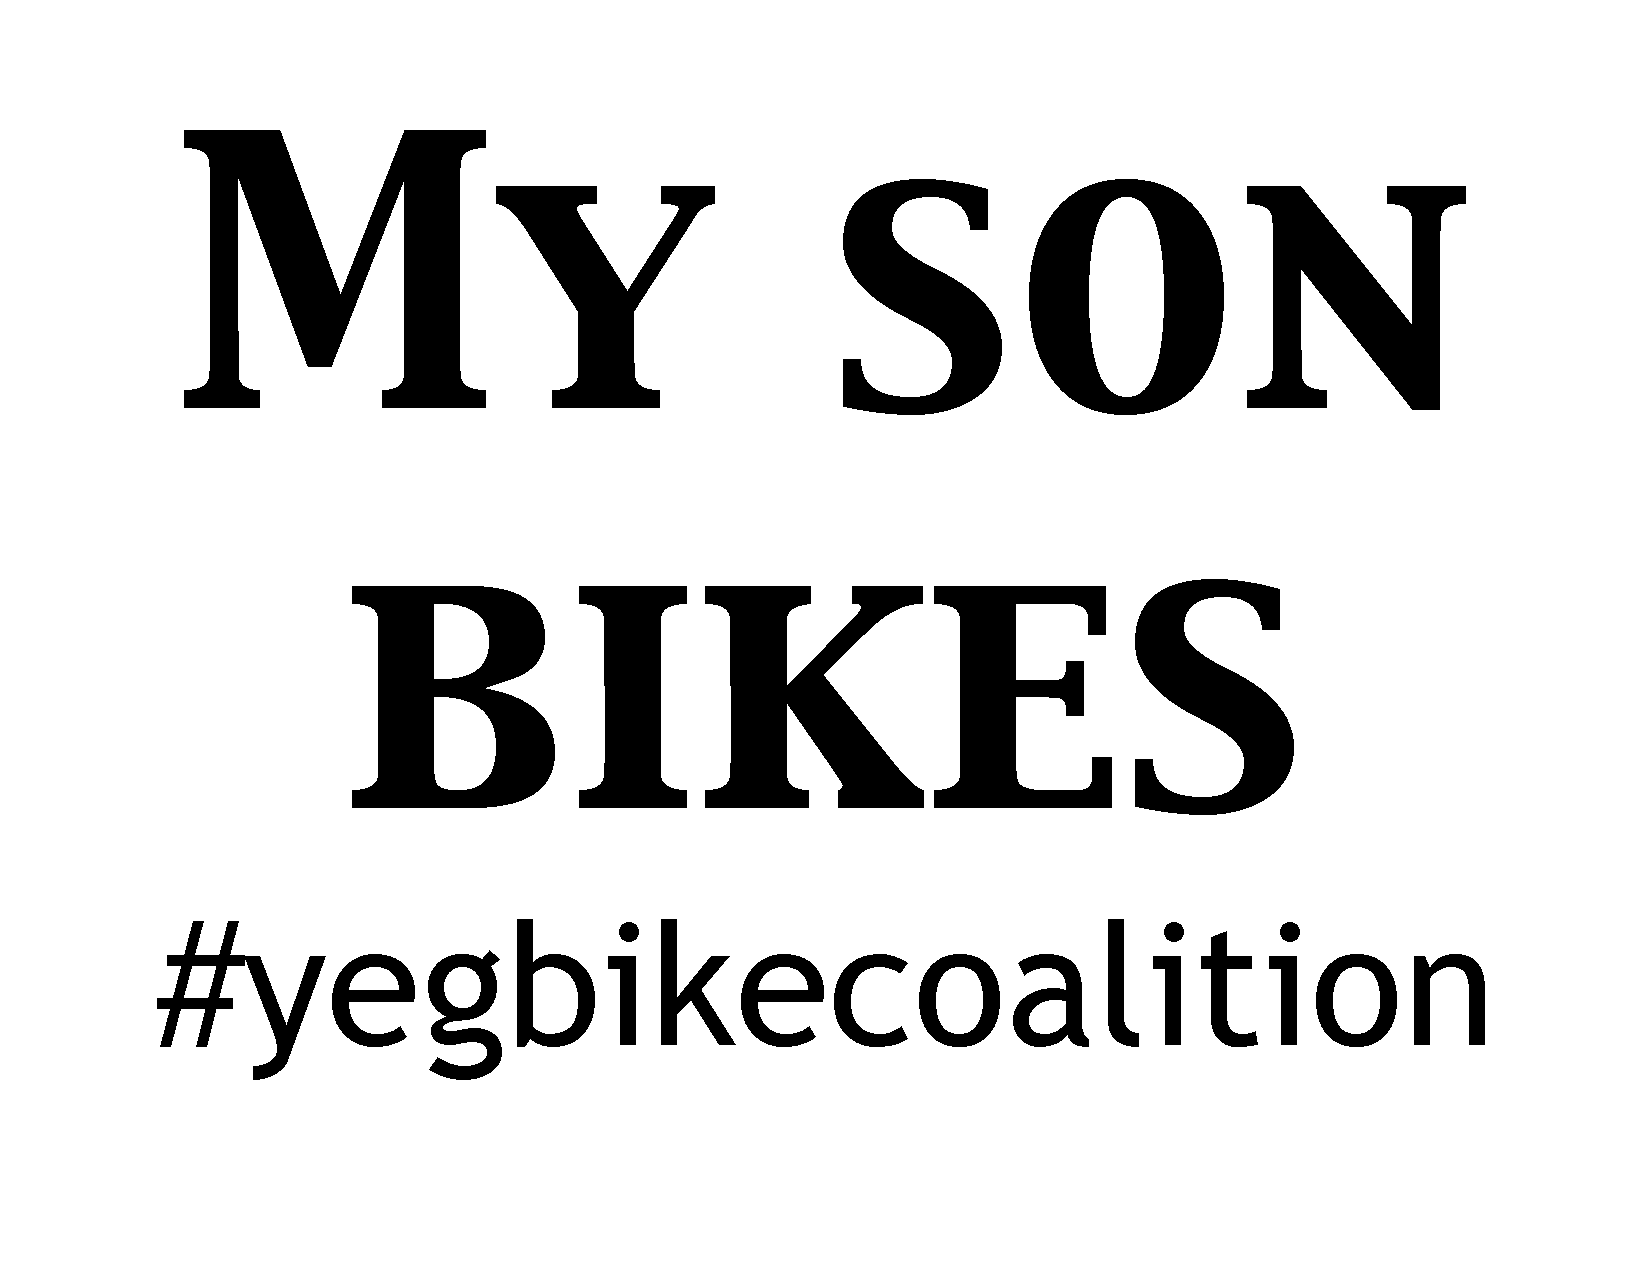 My son bikes